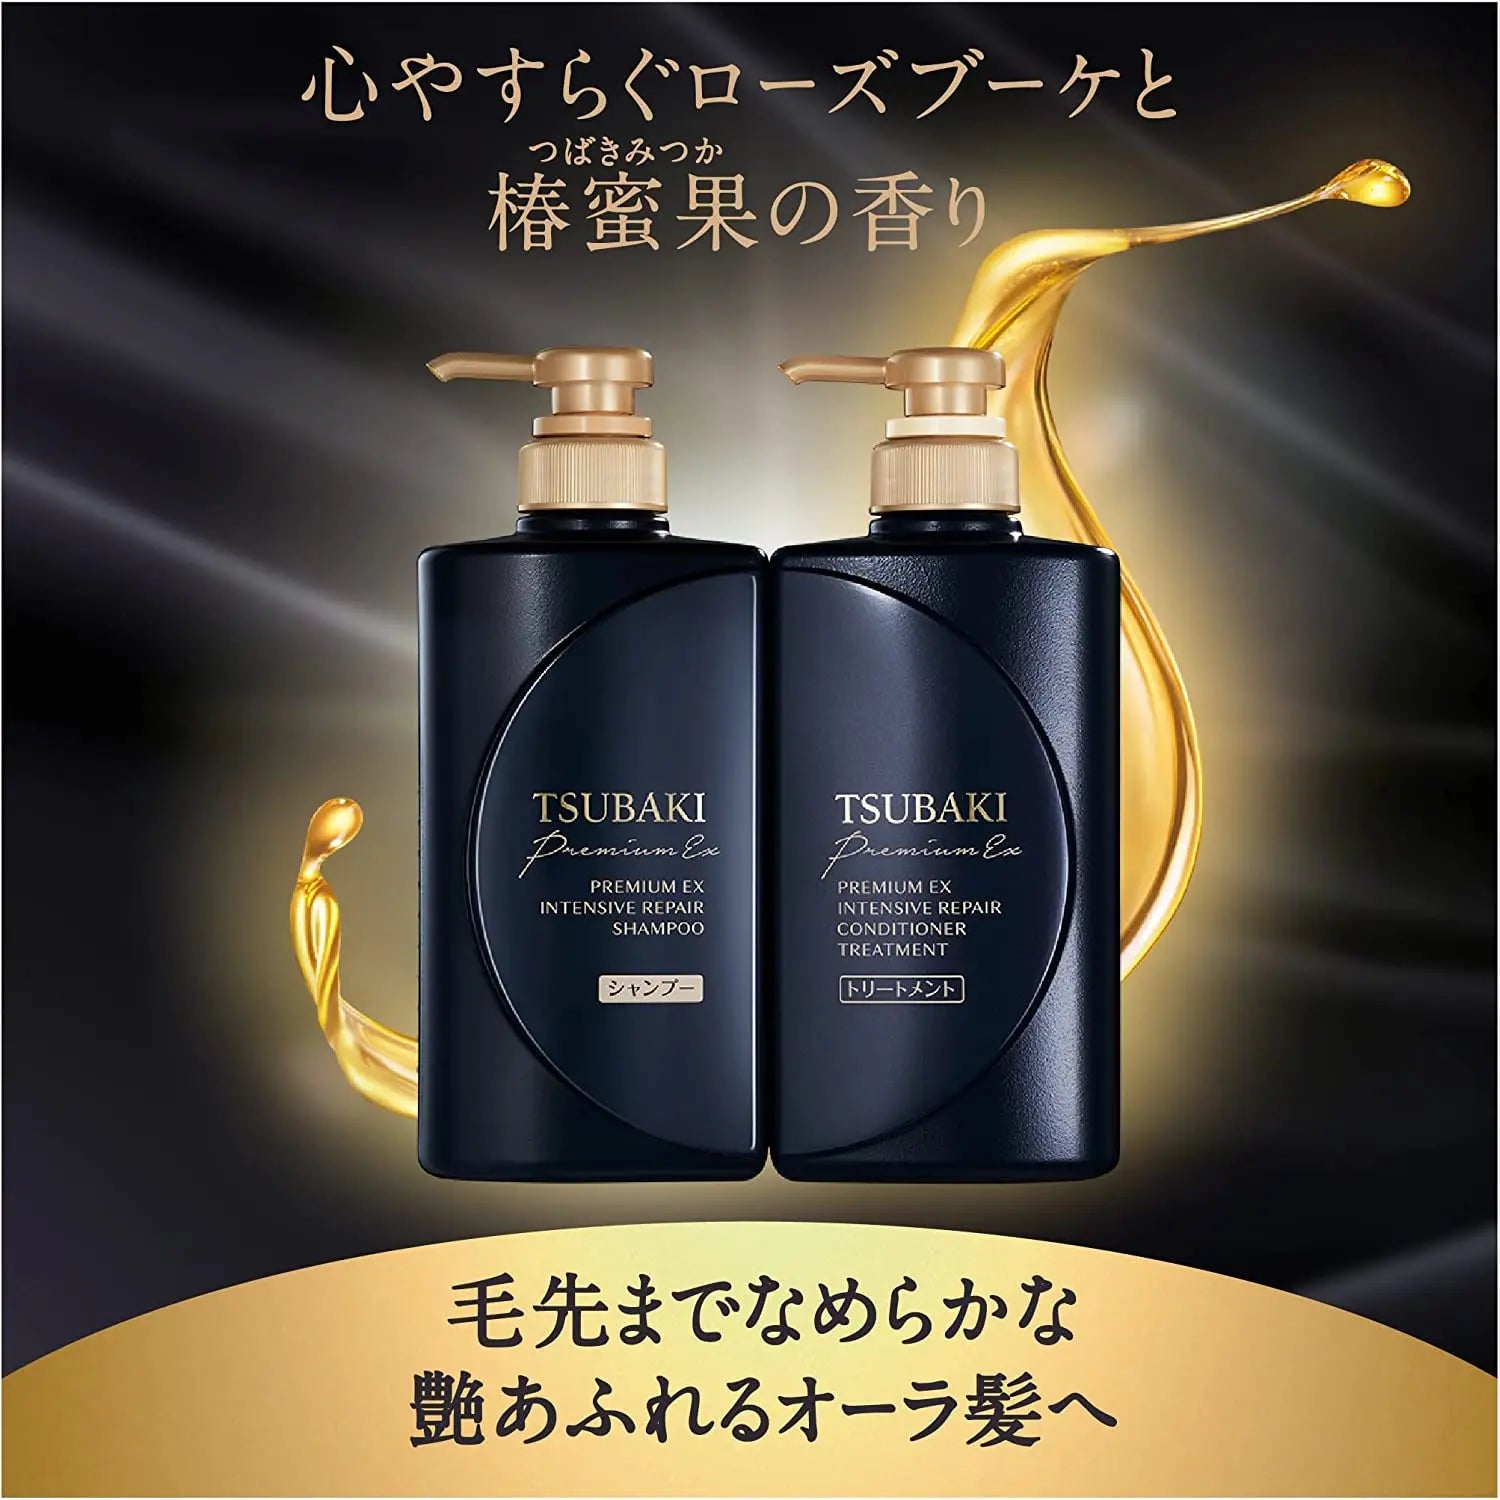 Tsubaki Premium Ex Intensive Repair Set 490ml Each + Hair Mask 40g - Buy Me Japan